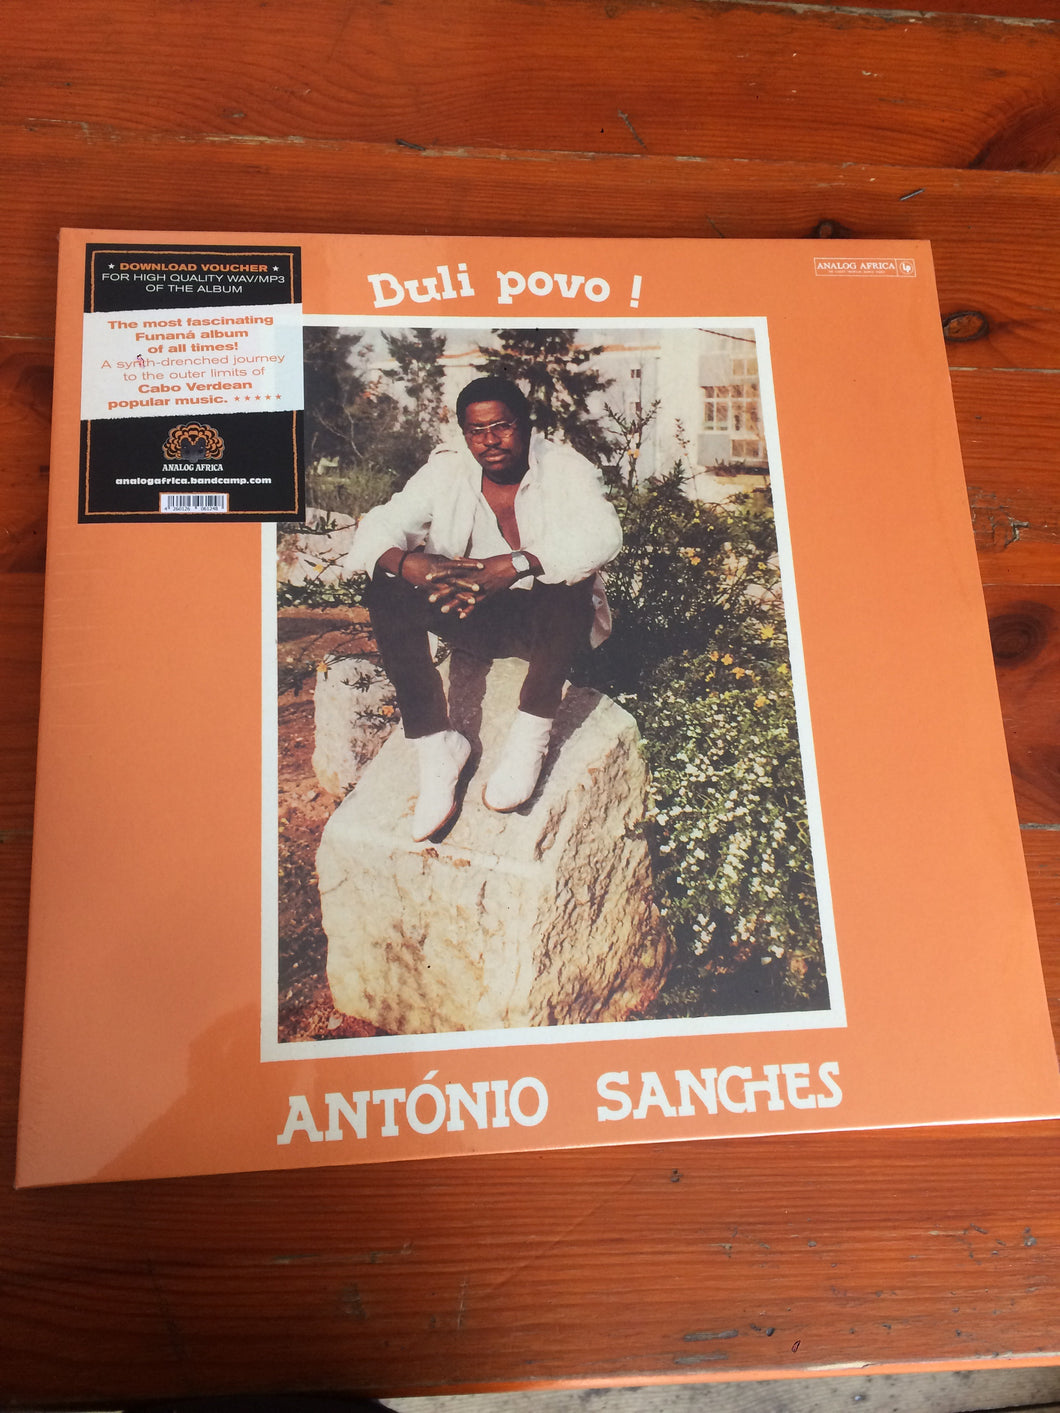 Antonio Sanches - Buli Povo!